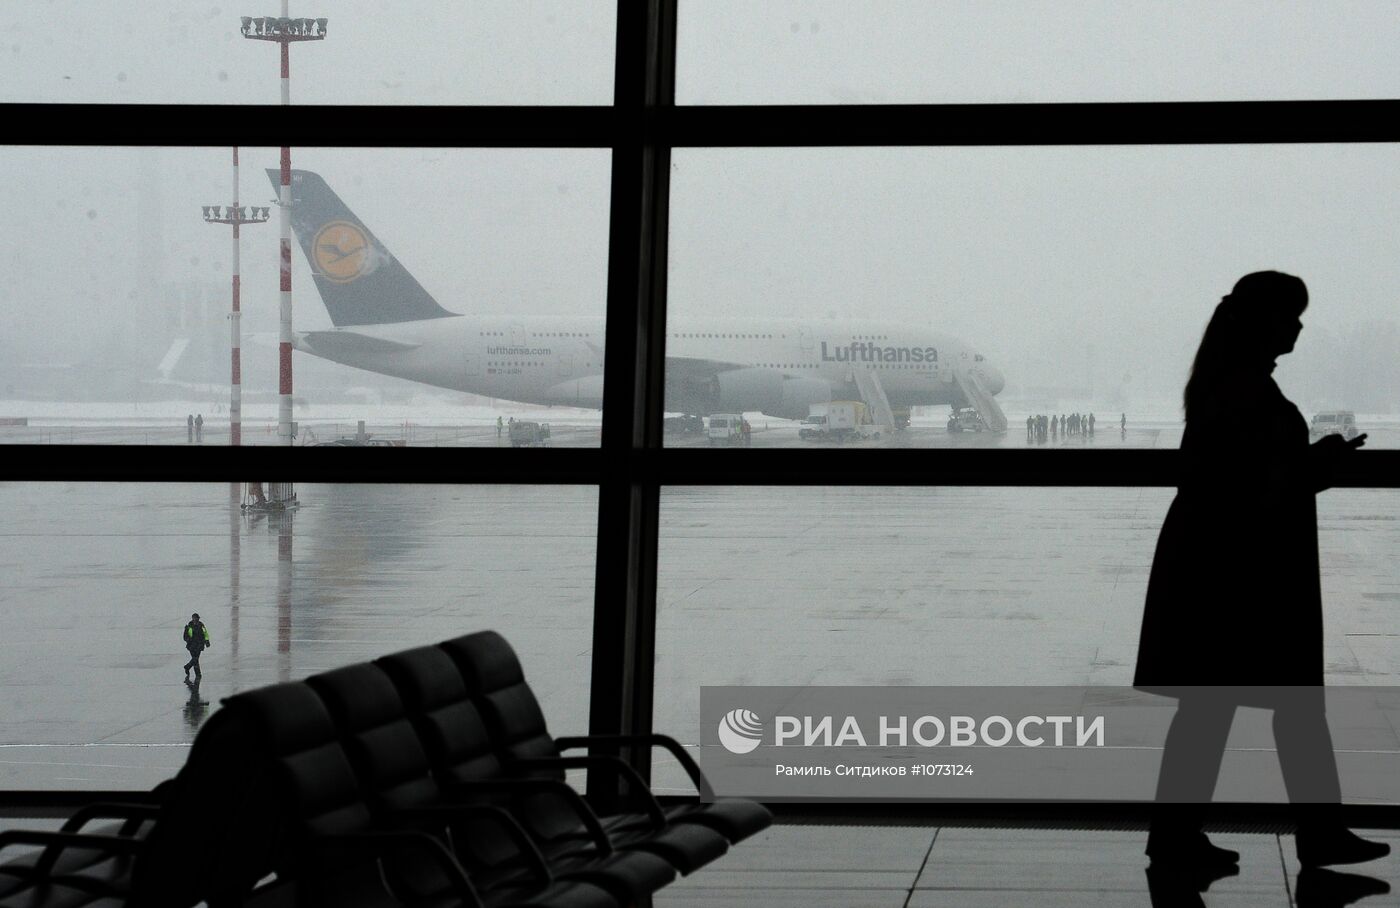 Прилет авиалайнера Lufthansa A380 в аэропорт "Внуково"